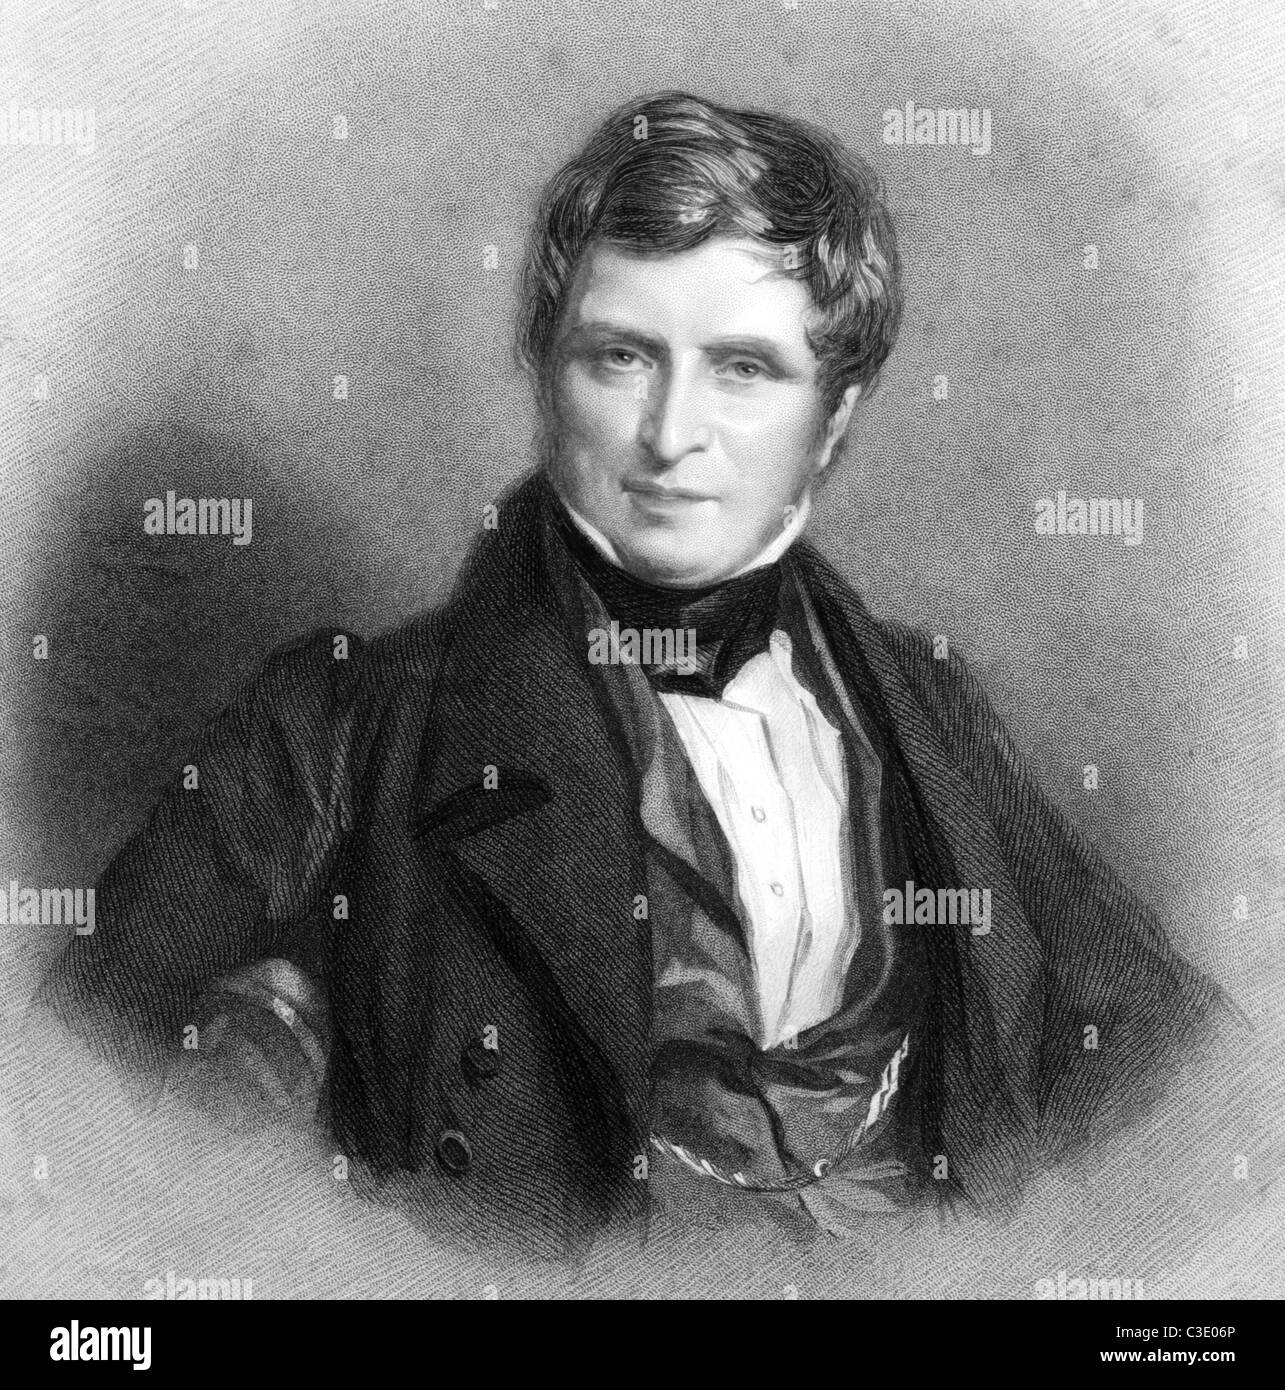 John Singleton Copley, 1. Baron Lyndhurst (1772-1863) auf Gravur von 1836. Britischer Jurist und Politiker. Stockfoto